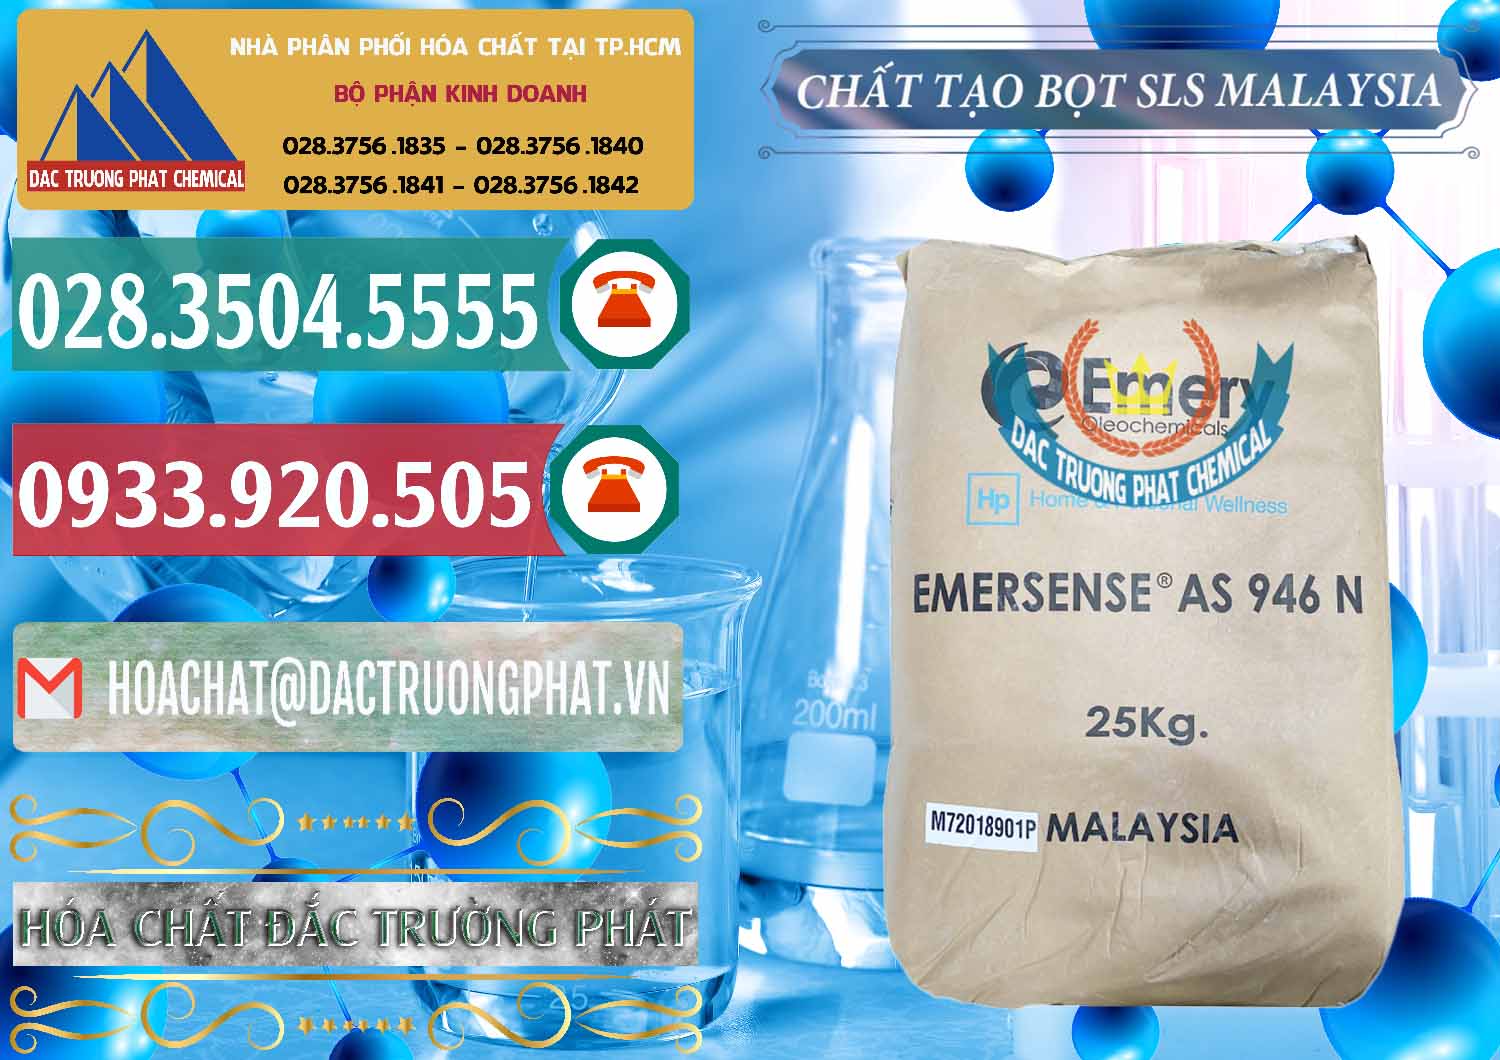 Công ty bán và cung cấp Chất Tạo Bọt SLS Emery - Emersense AS 946N Mã Lai Malaysia - 0423 - Nơi phân phối và cung ứng hóa chất tại TP.HCM - muabanhoachat.vn